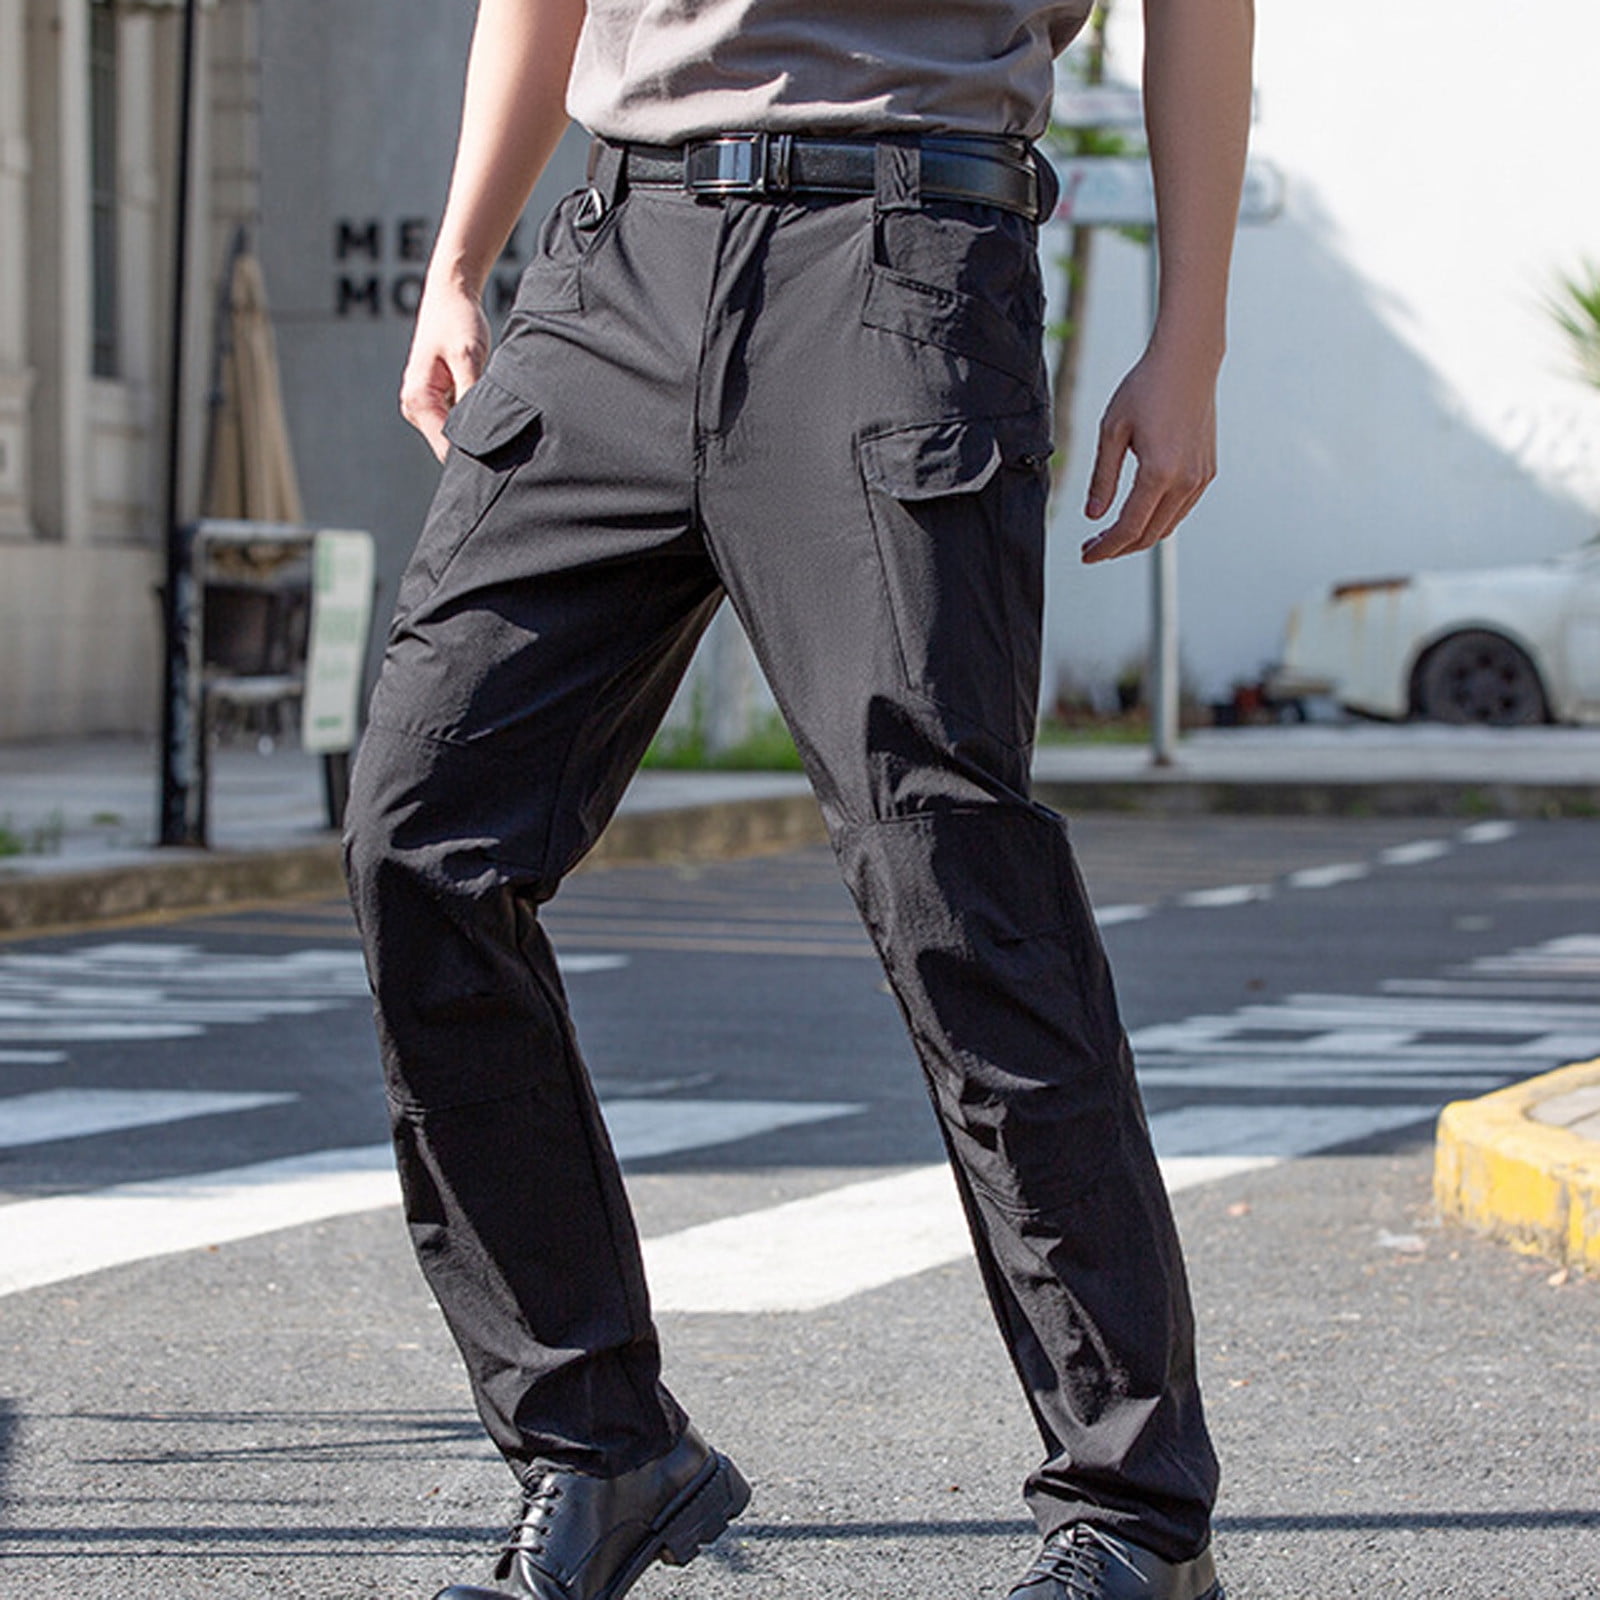 Men's Cargo pants in wrinkled nylon canvas